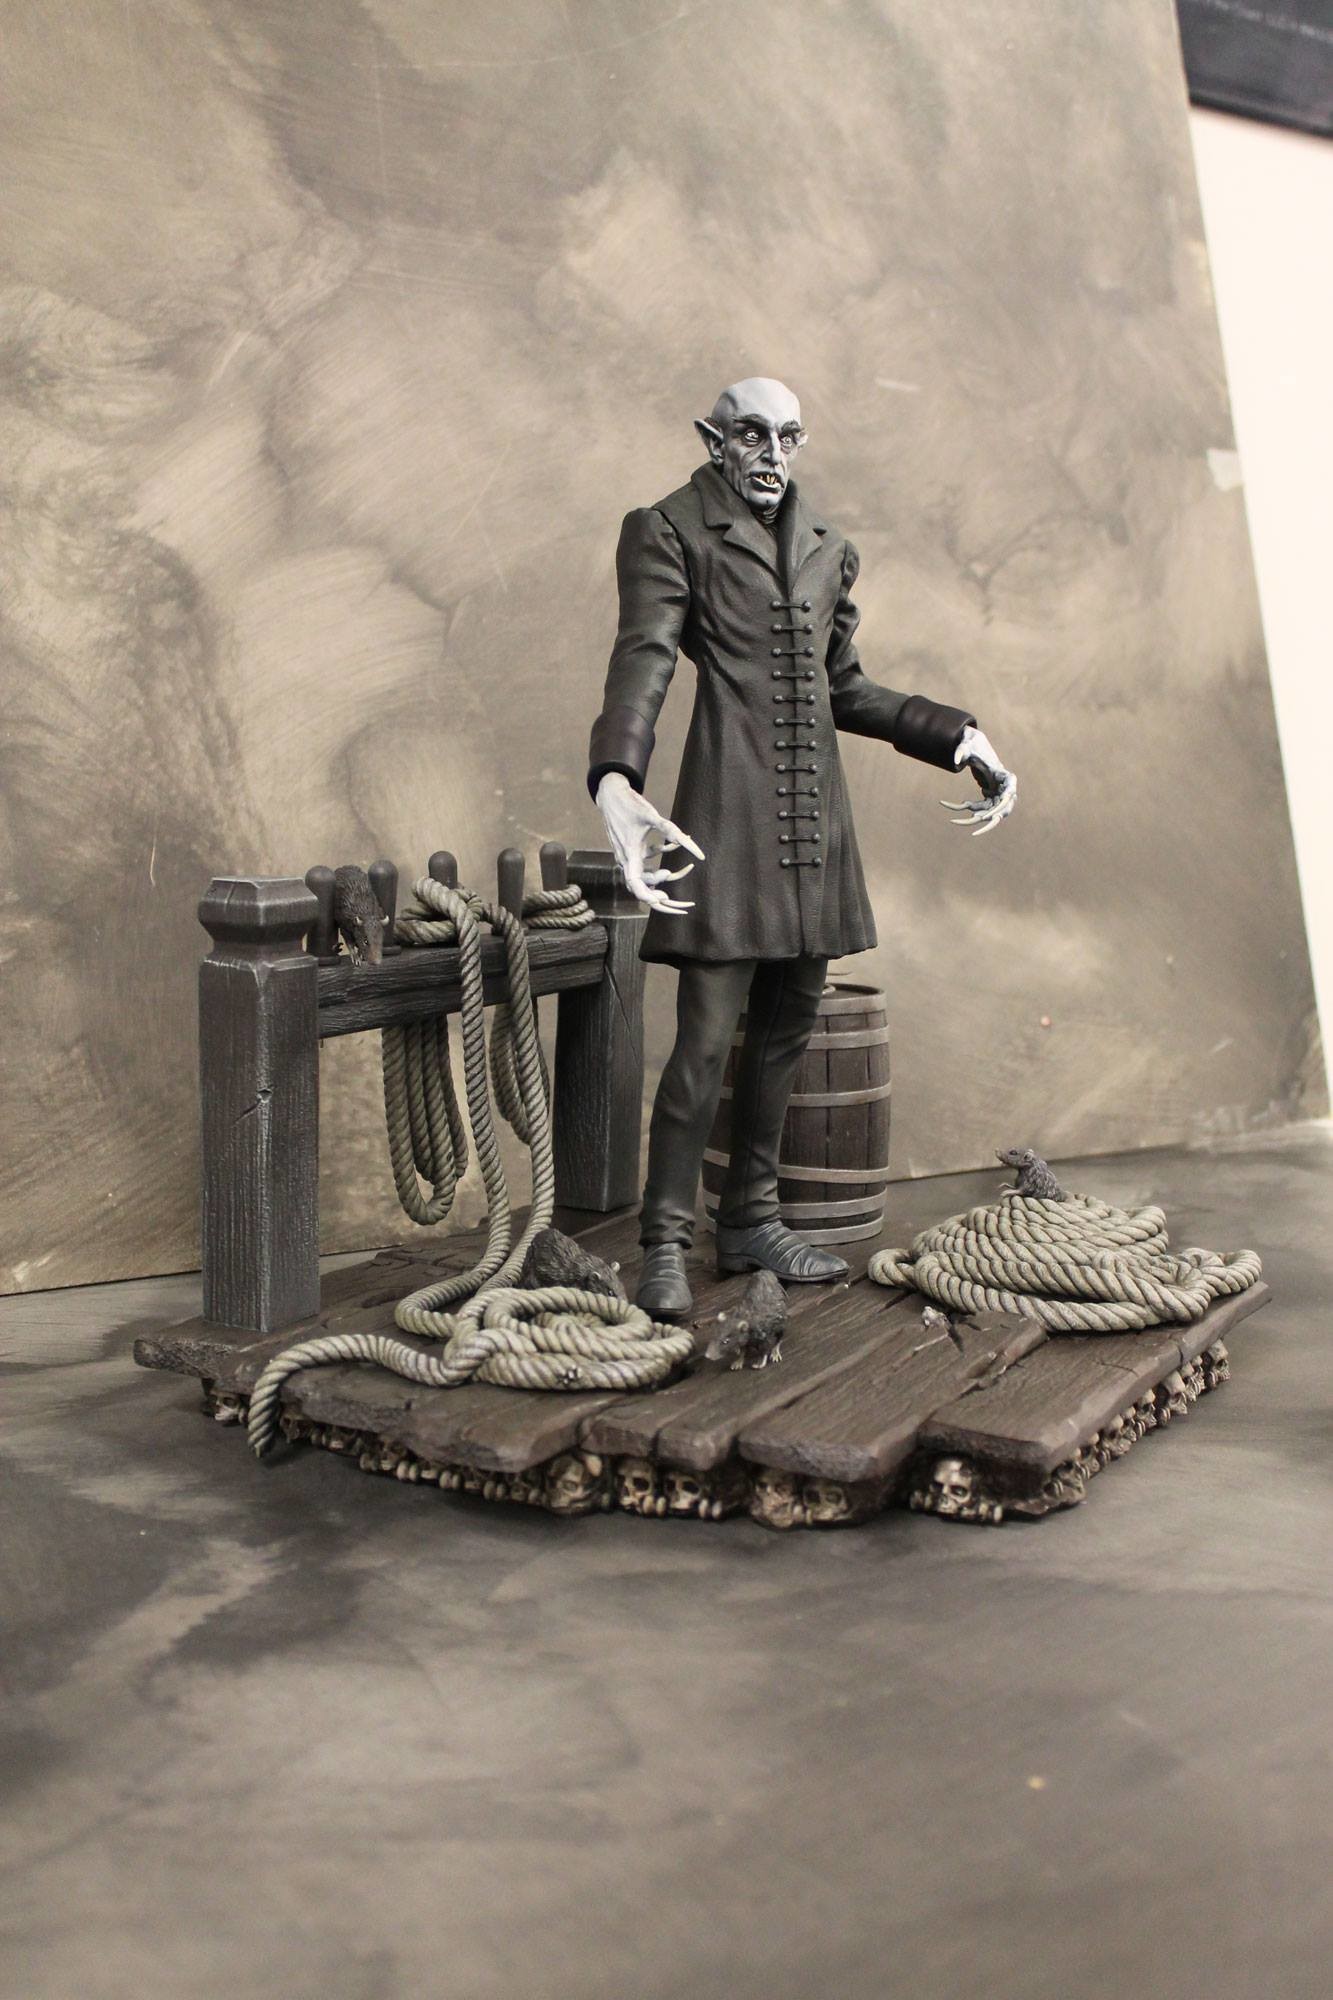 Danko artstation - Nosferatu Statue